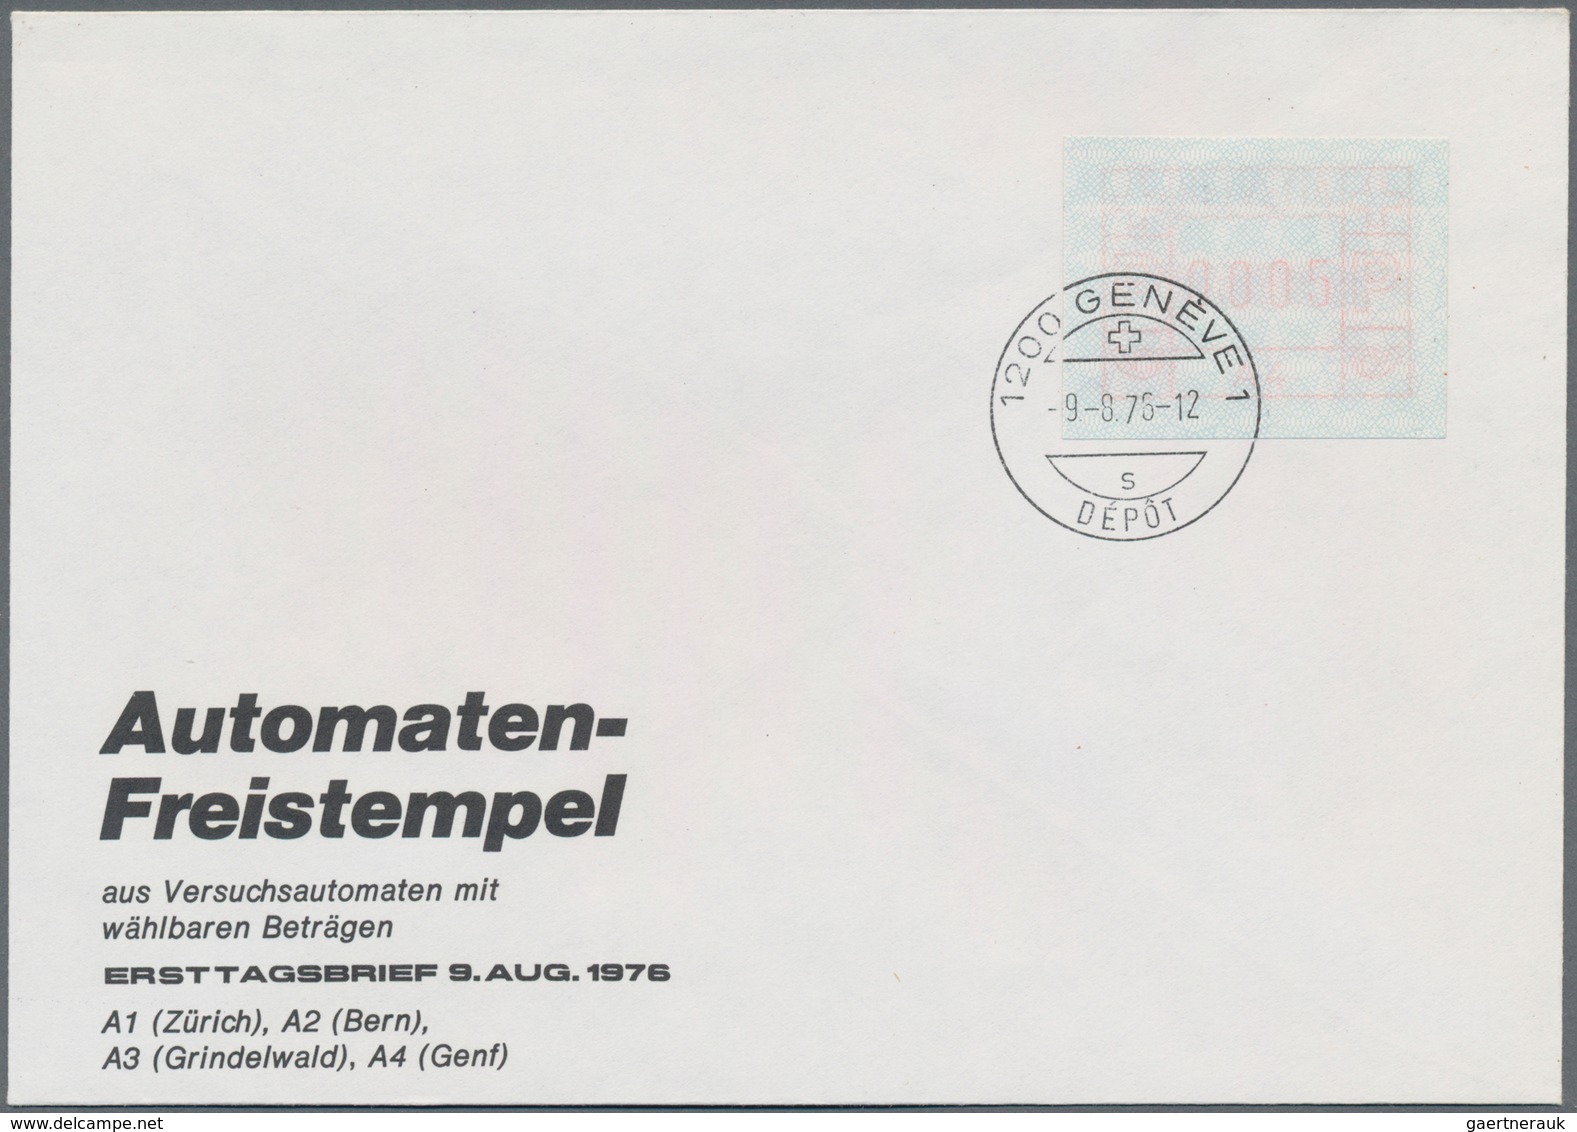 Schweiz - Automatenmarken: 1976 kompletter Satz von vier FDC aller Standorte (Bern, Genf, Grindelwal